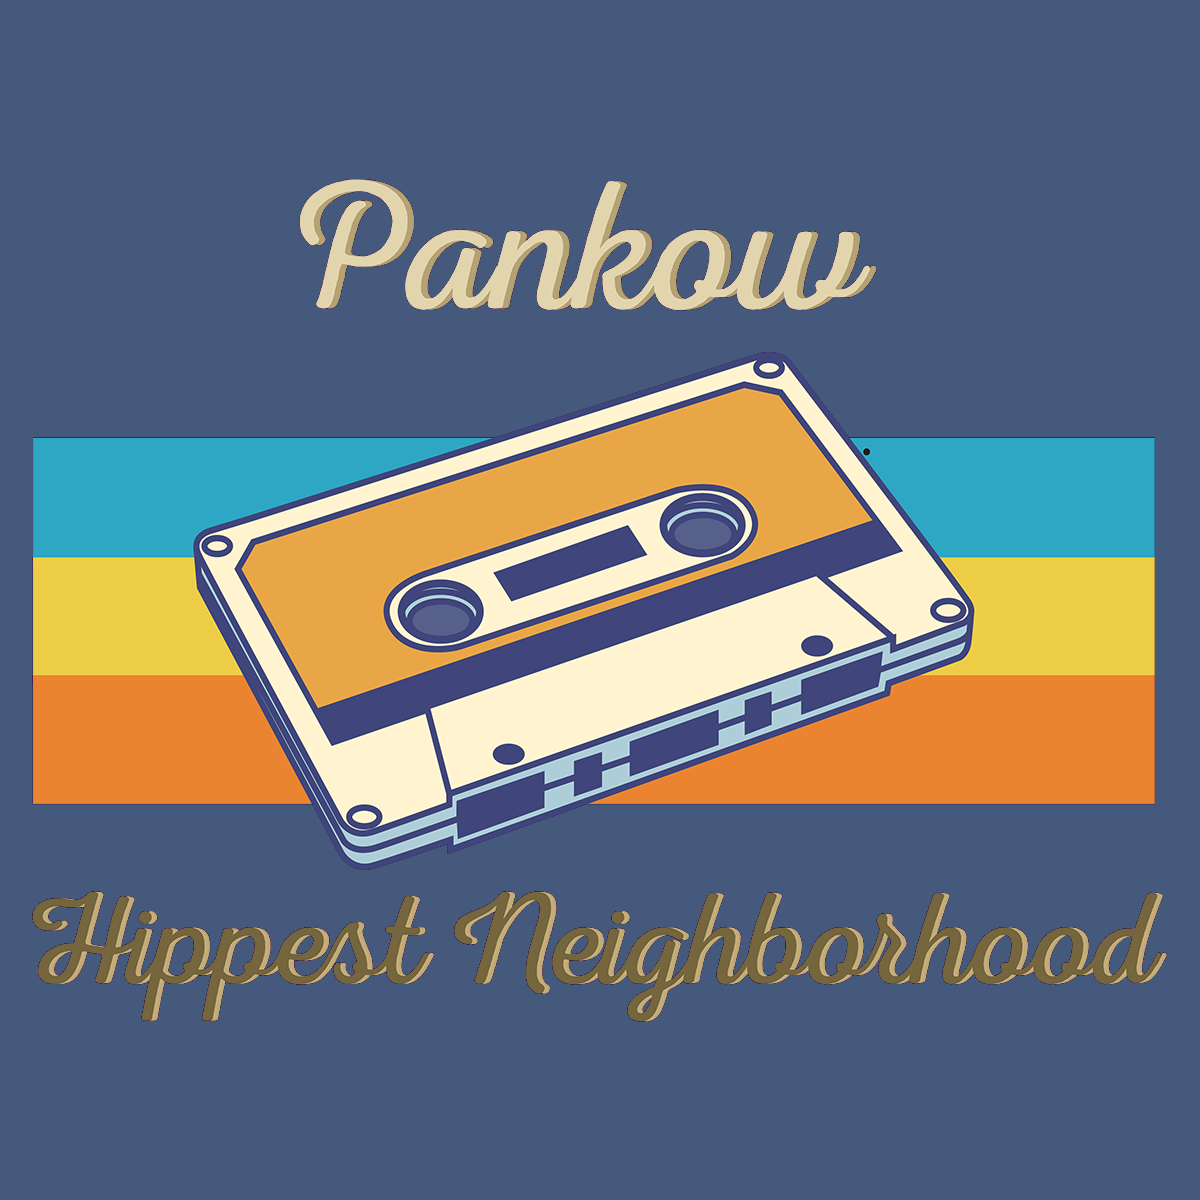 Pankow Hippest Neighborhood